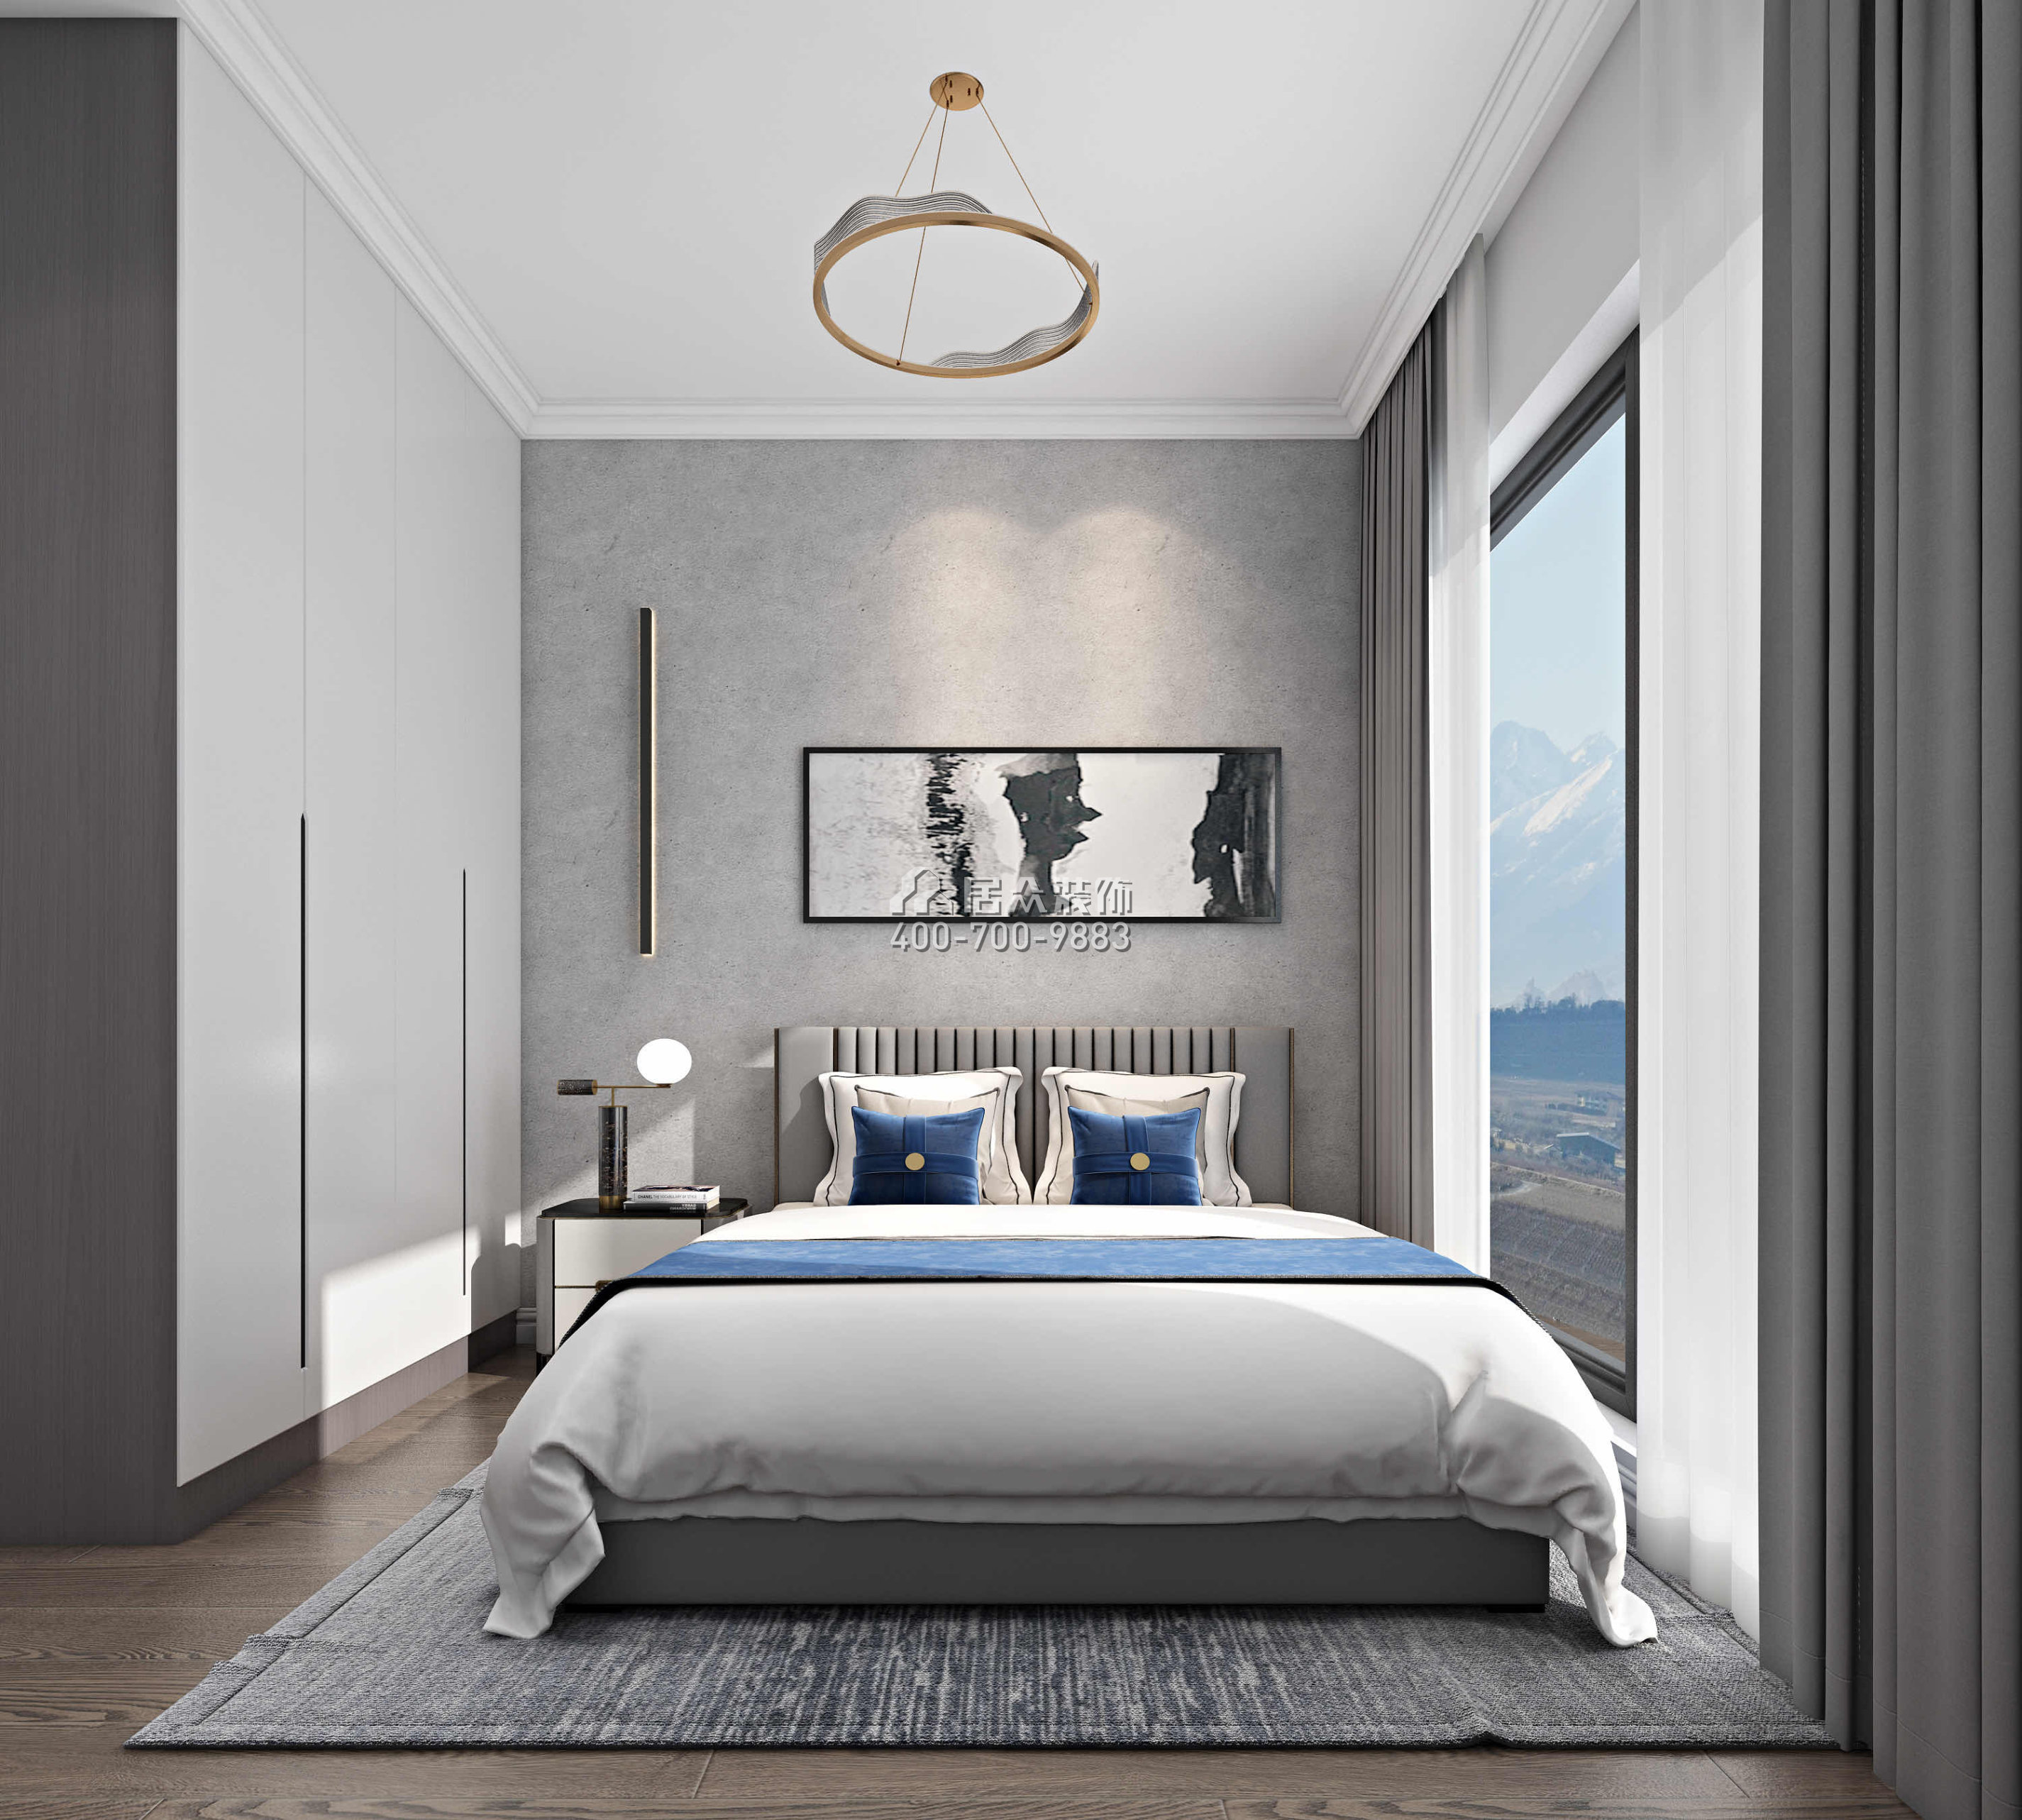 新天鹅堡122平方米现代简约风格平层户型卧室装修效果图